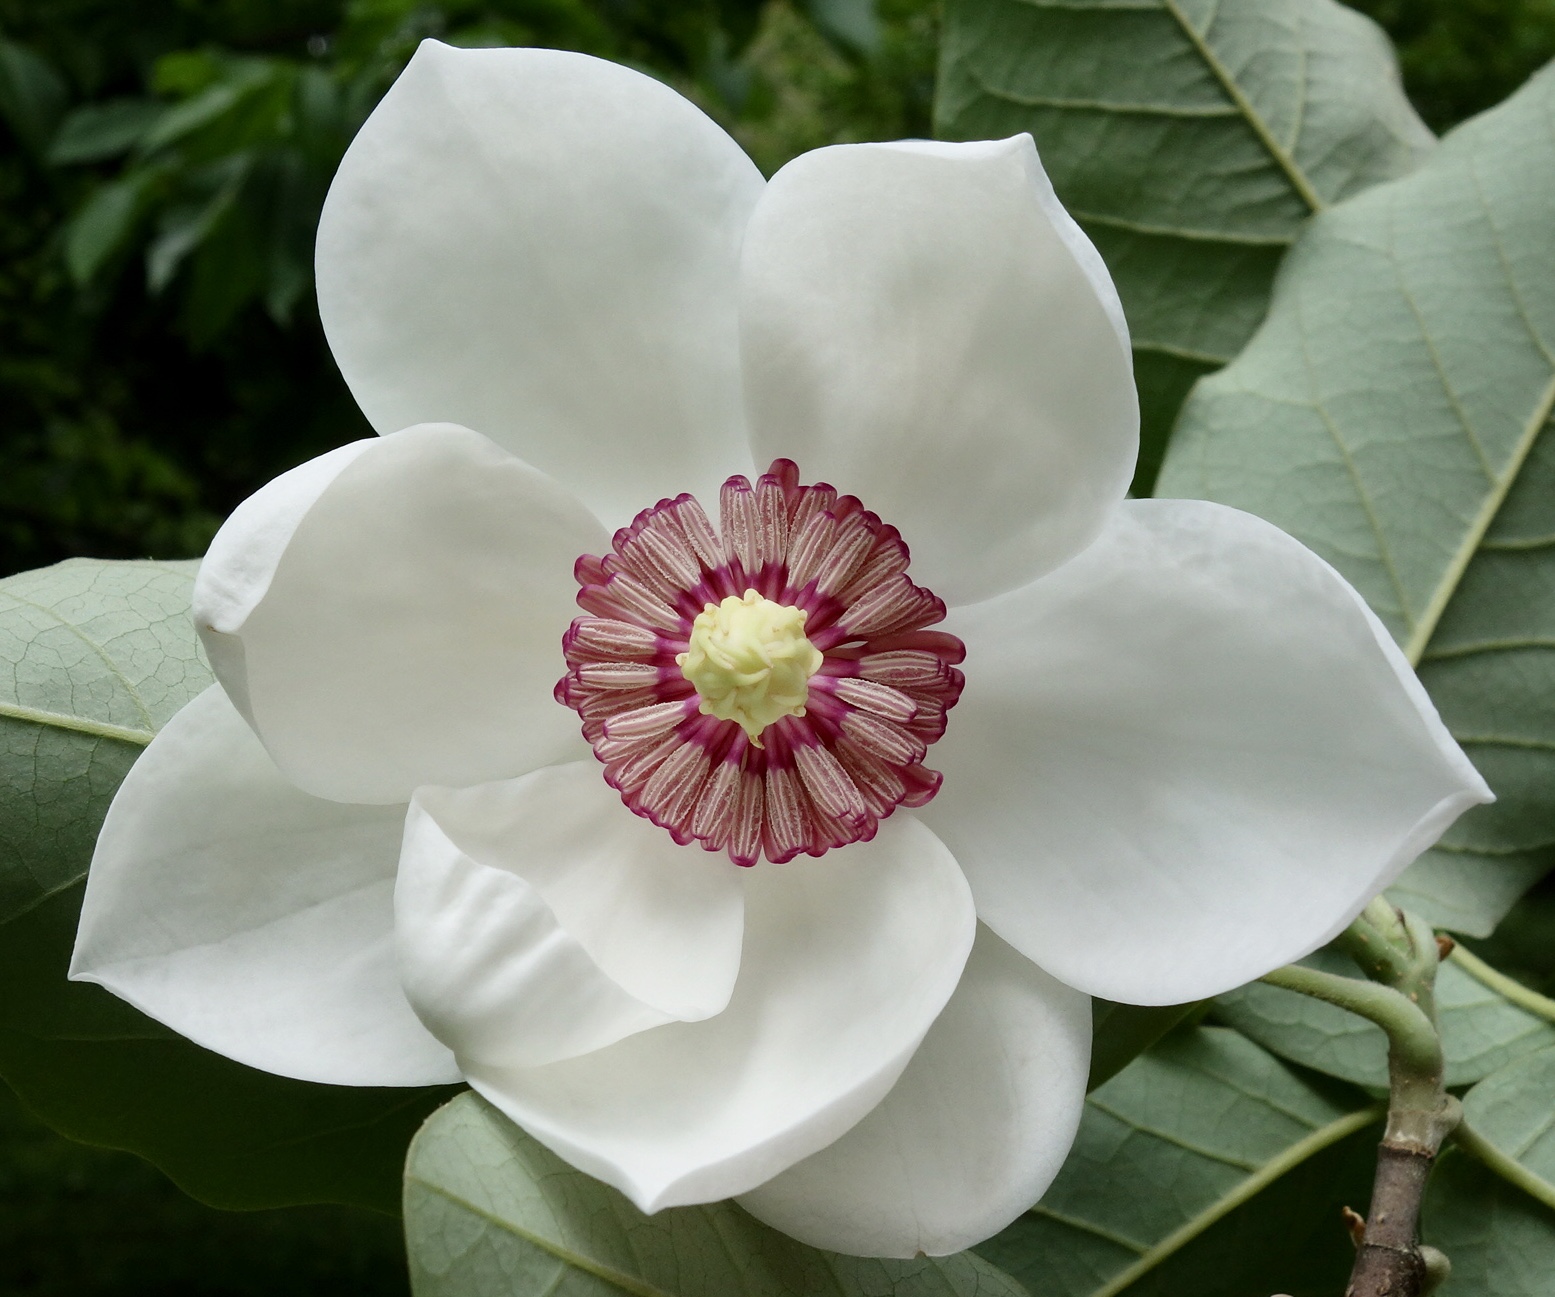 magnolia - wikipedia